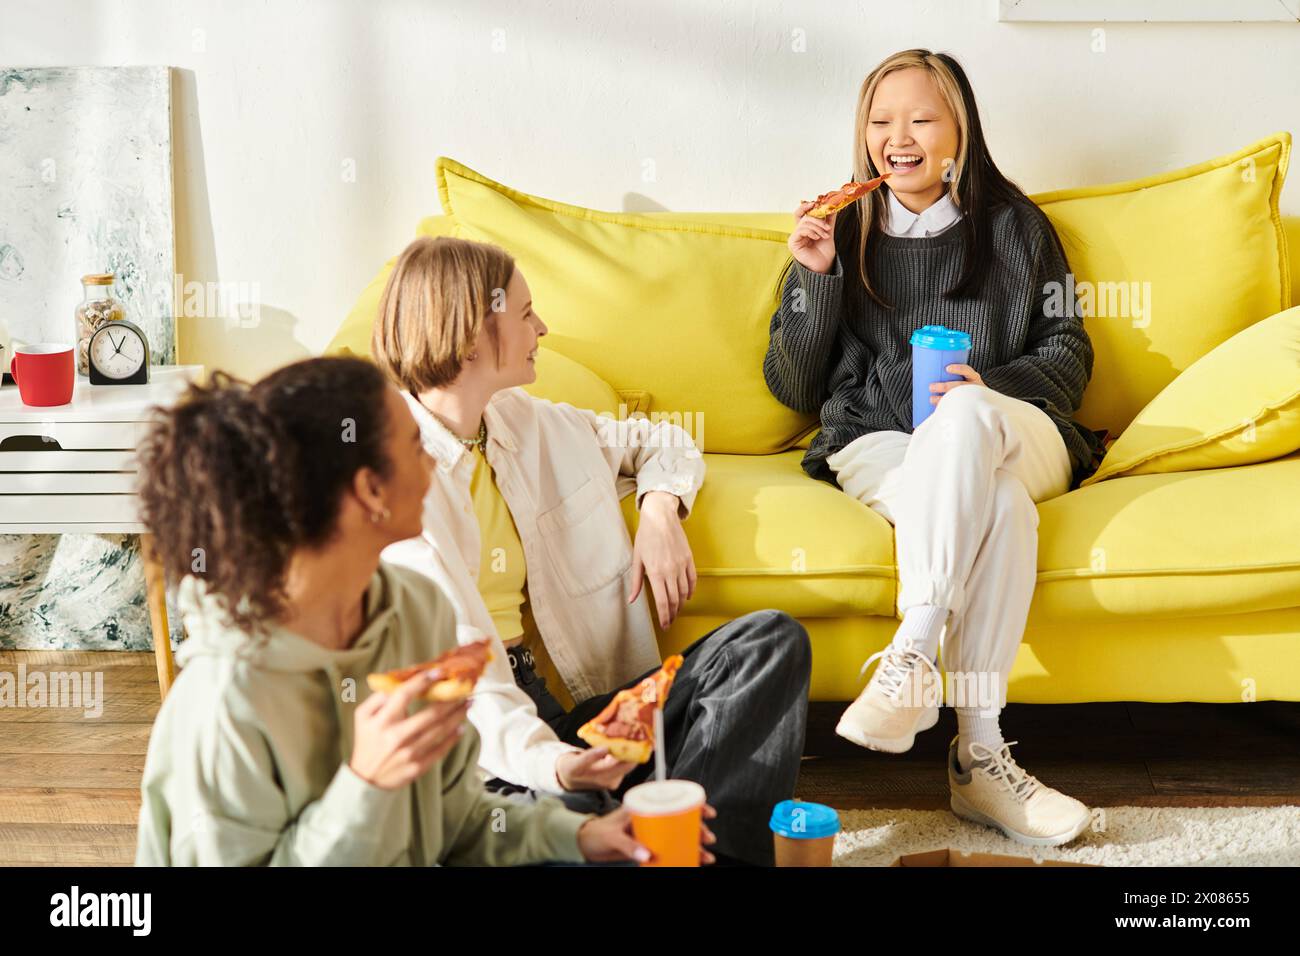 Eine vielfältige Gruppe Teenager-Mädchen, die sich zu Hause auf einer lebhaften gelben Couch amüsieren. Stockfoto